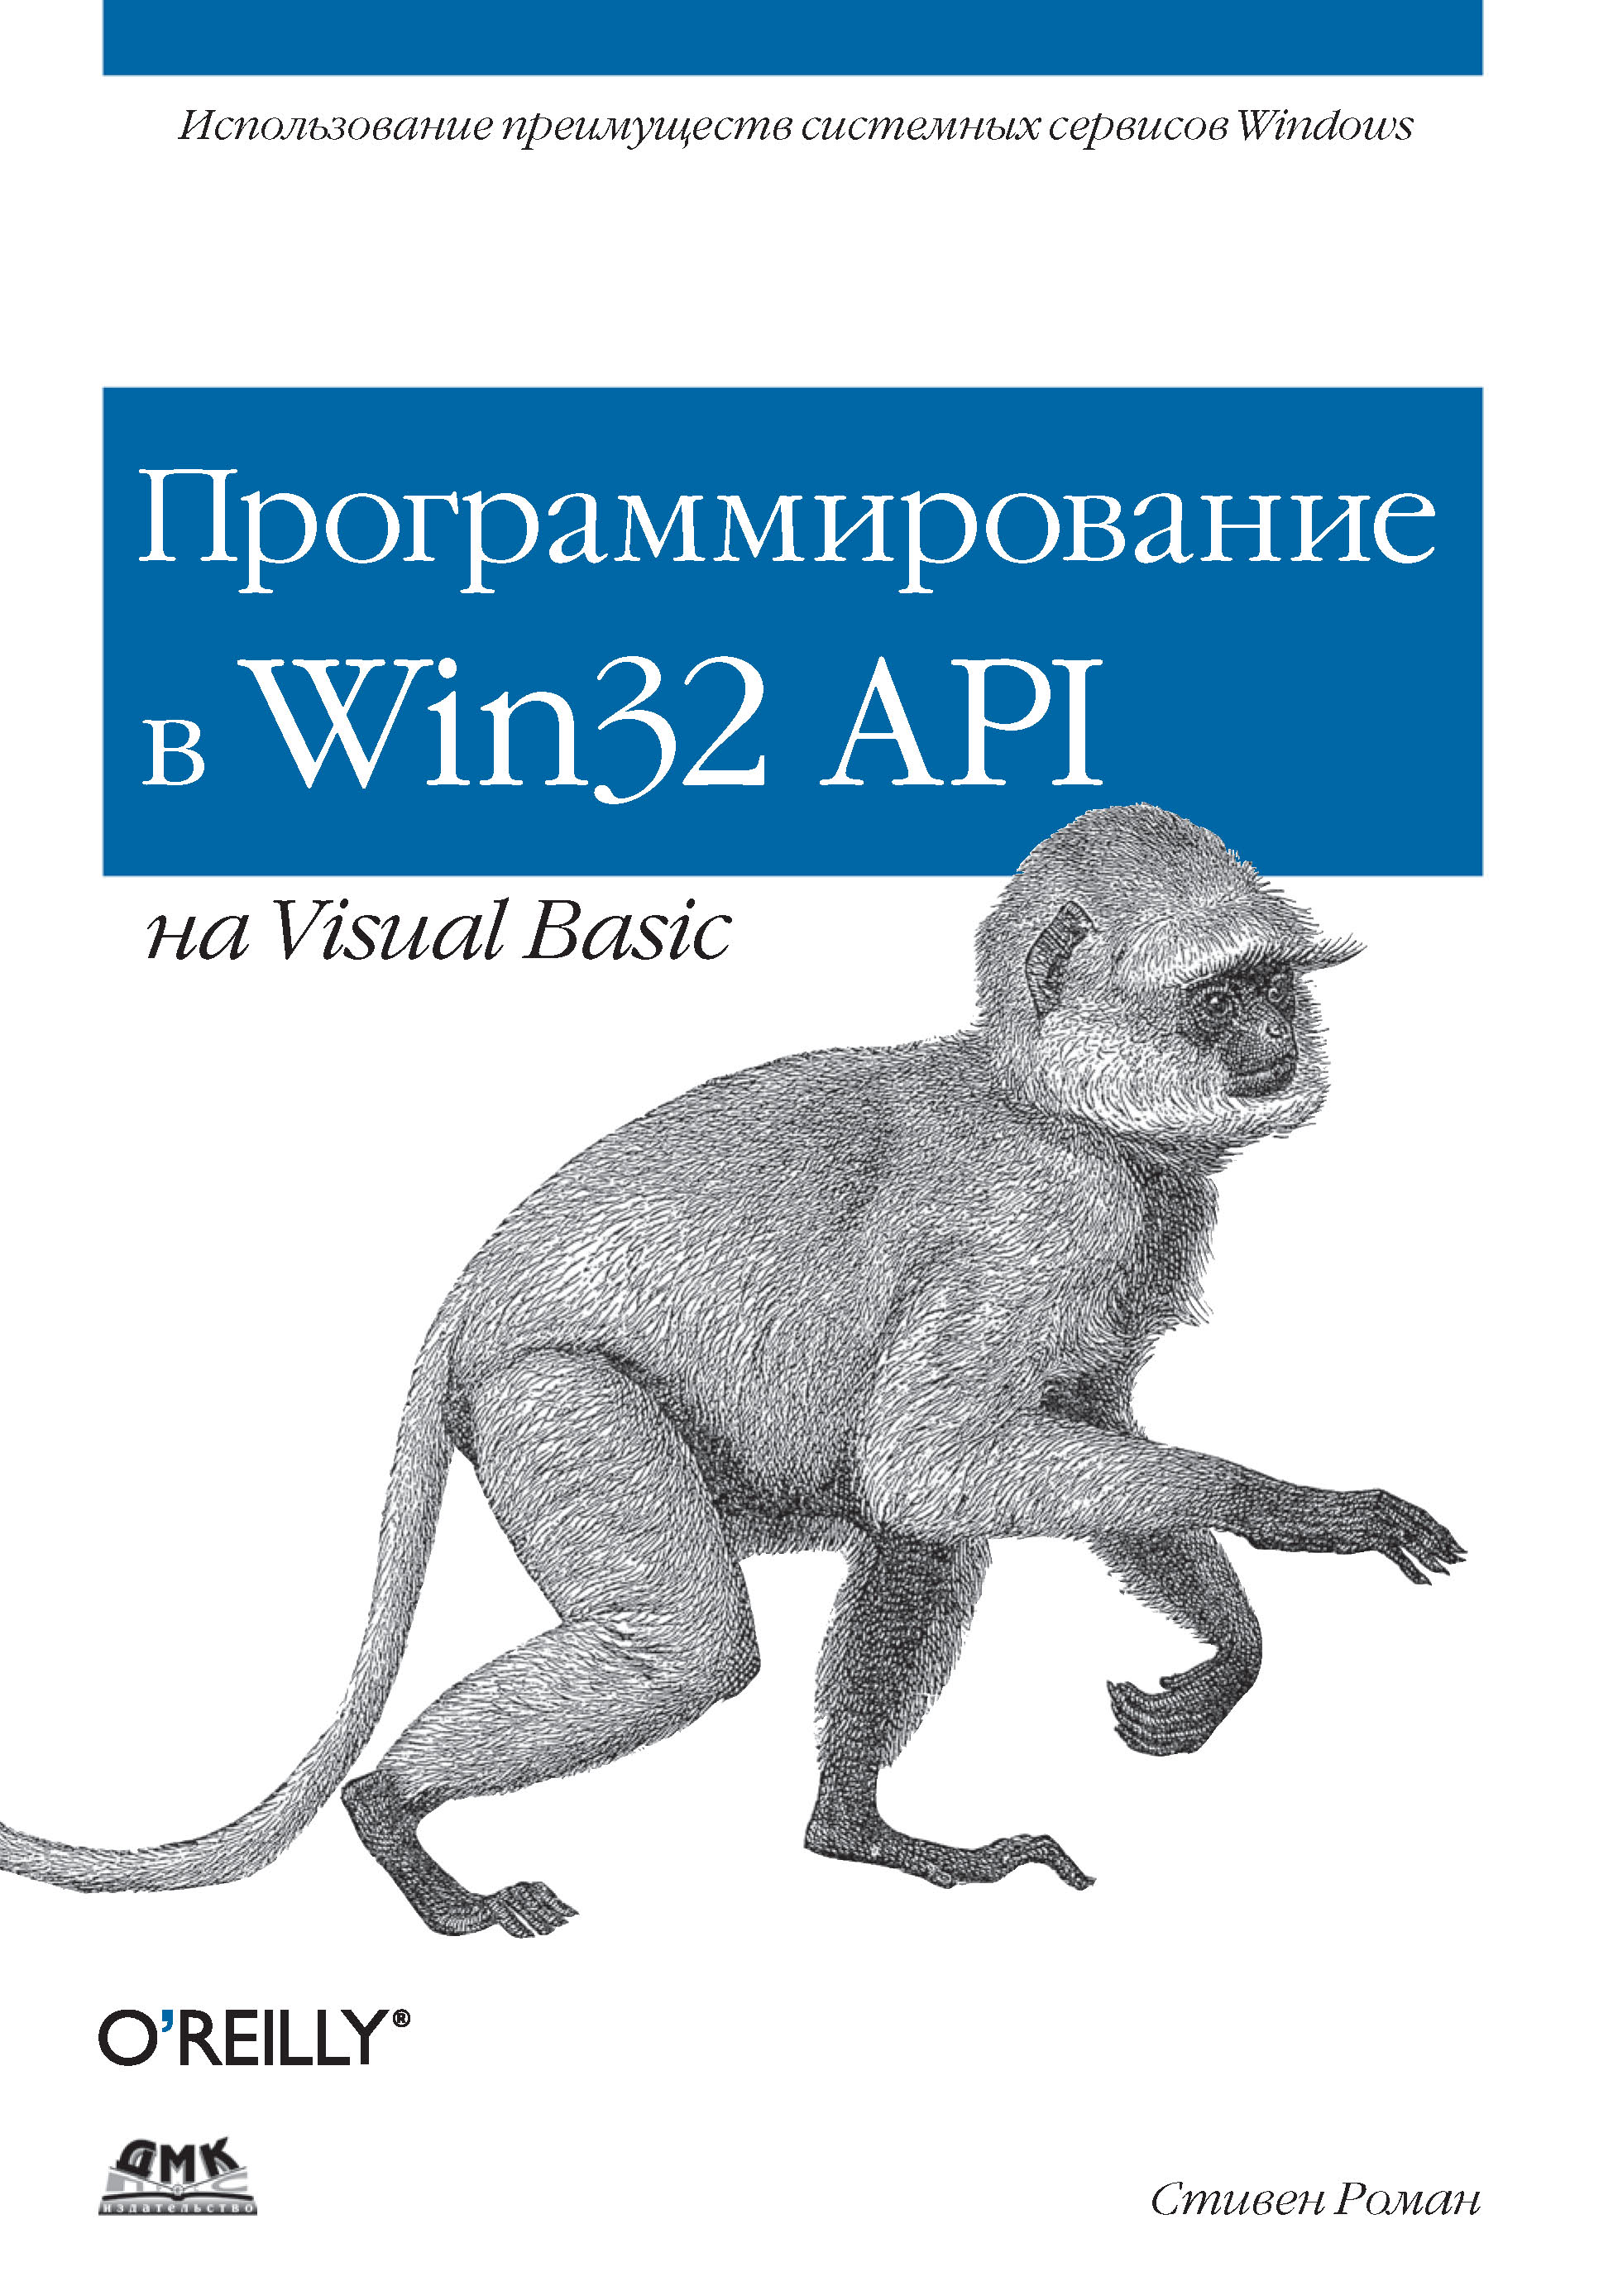 Книга Для программистов (ДМК Пресс) Программирование в Win32 API на Visual Basic созданная Стивен Роман, А. П. Караваев может относится к жанру зарубежная компьютерная литература, программирование. Стоимость электронной книги Программирование в Win32 API на Visual Basic с идентификатором 22879690 составляет 279.00 руб.